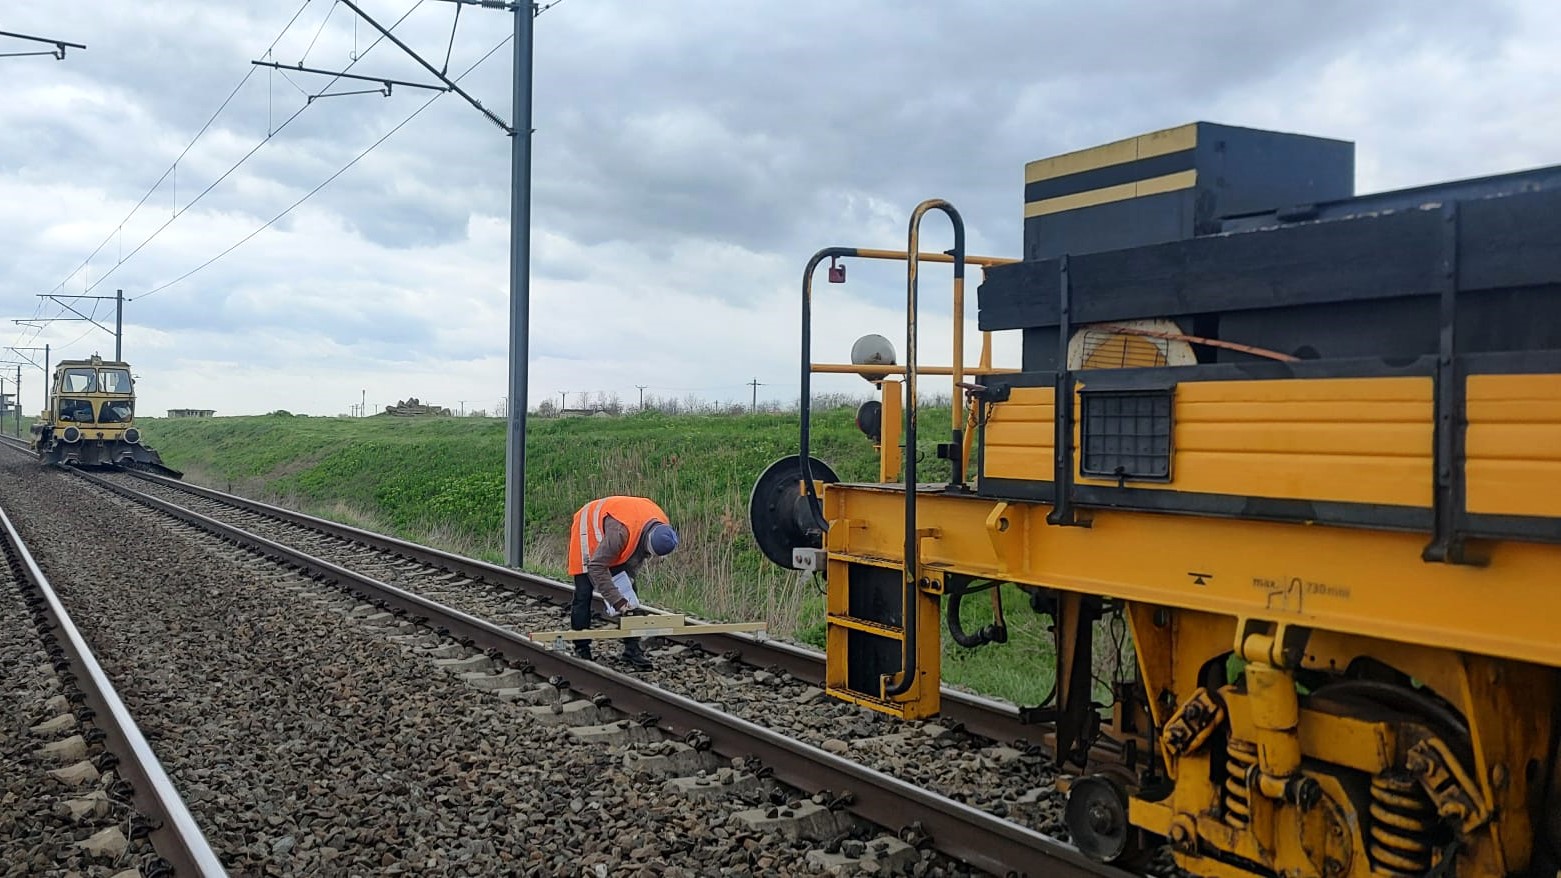 Lucrători feroviari / Foto: Facebook  - CFR Infrastructura